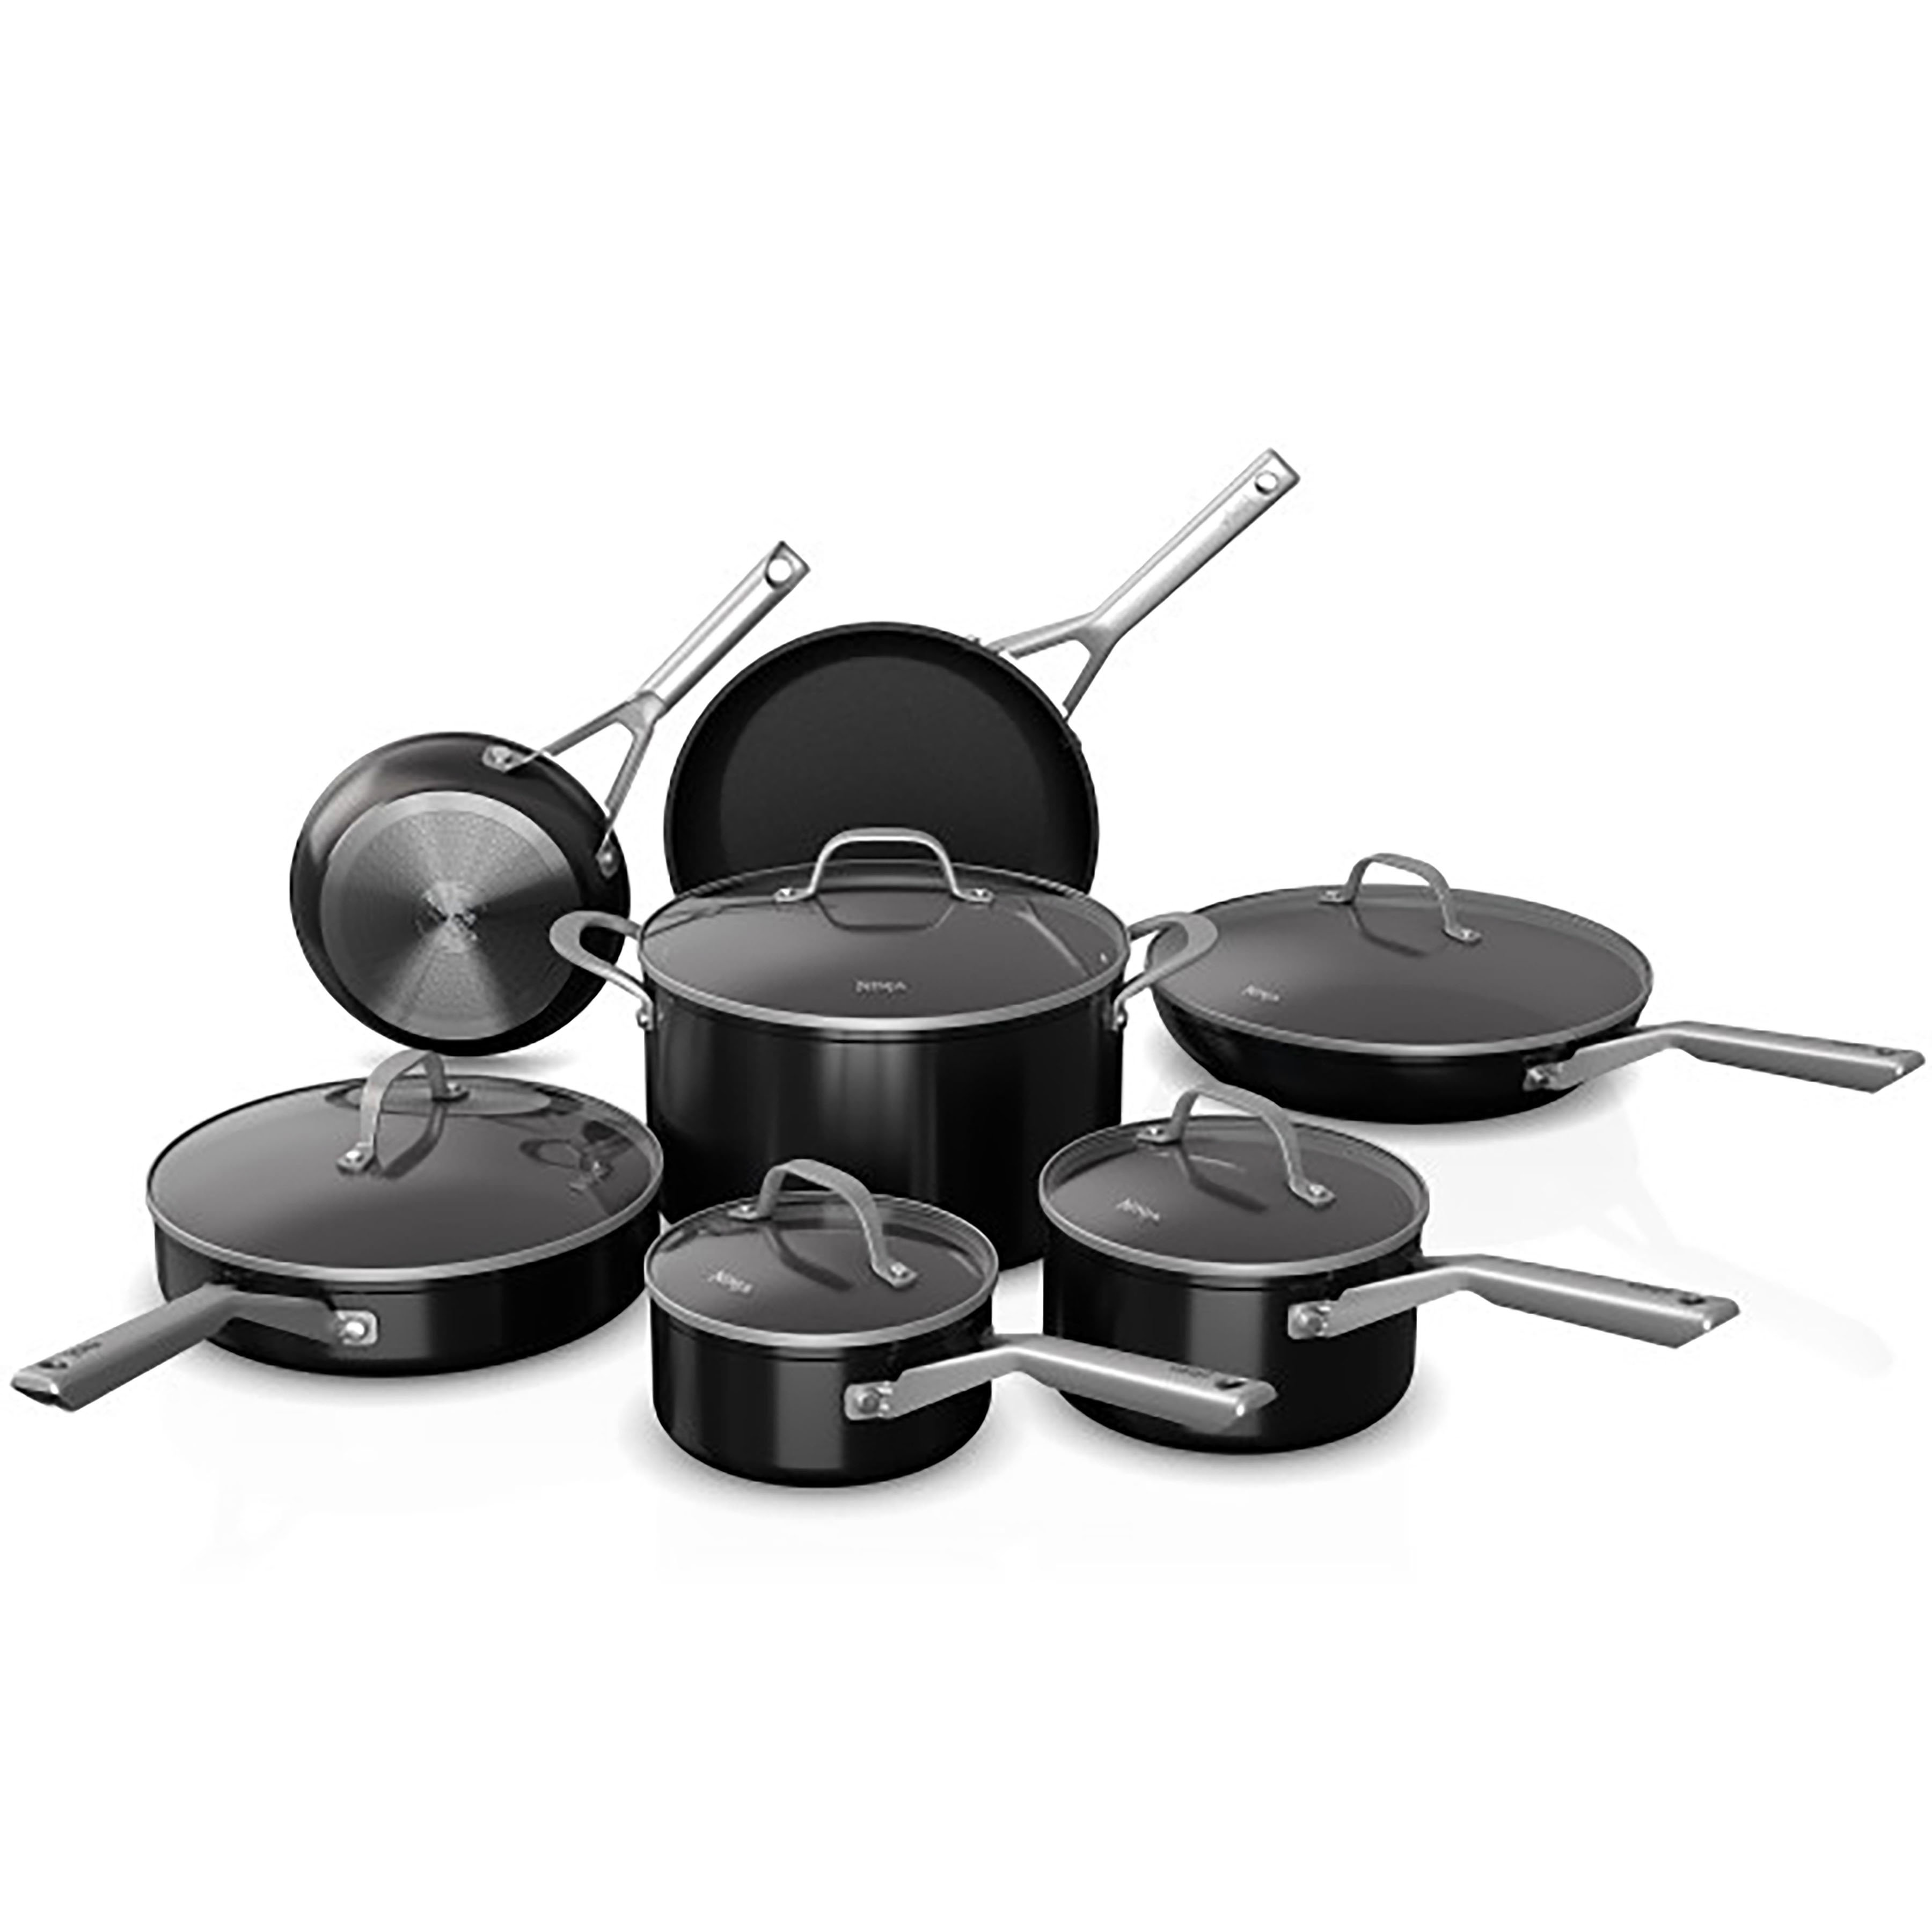 https://assets.wfcdn.com/im/96559728/compr-r85/2409/240969707/ninja-foodi-neverstick-12-piece-cookware-set-black.jpg